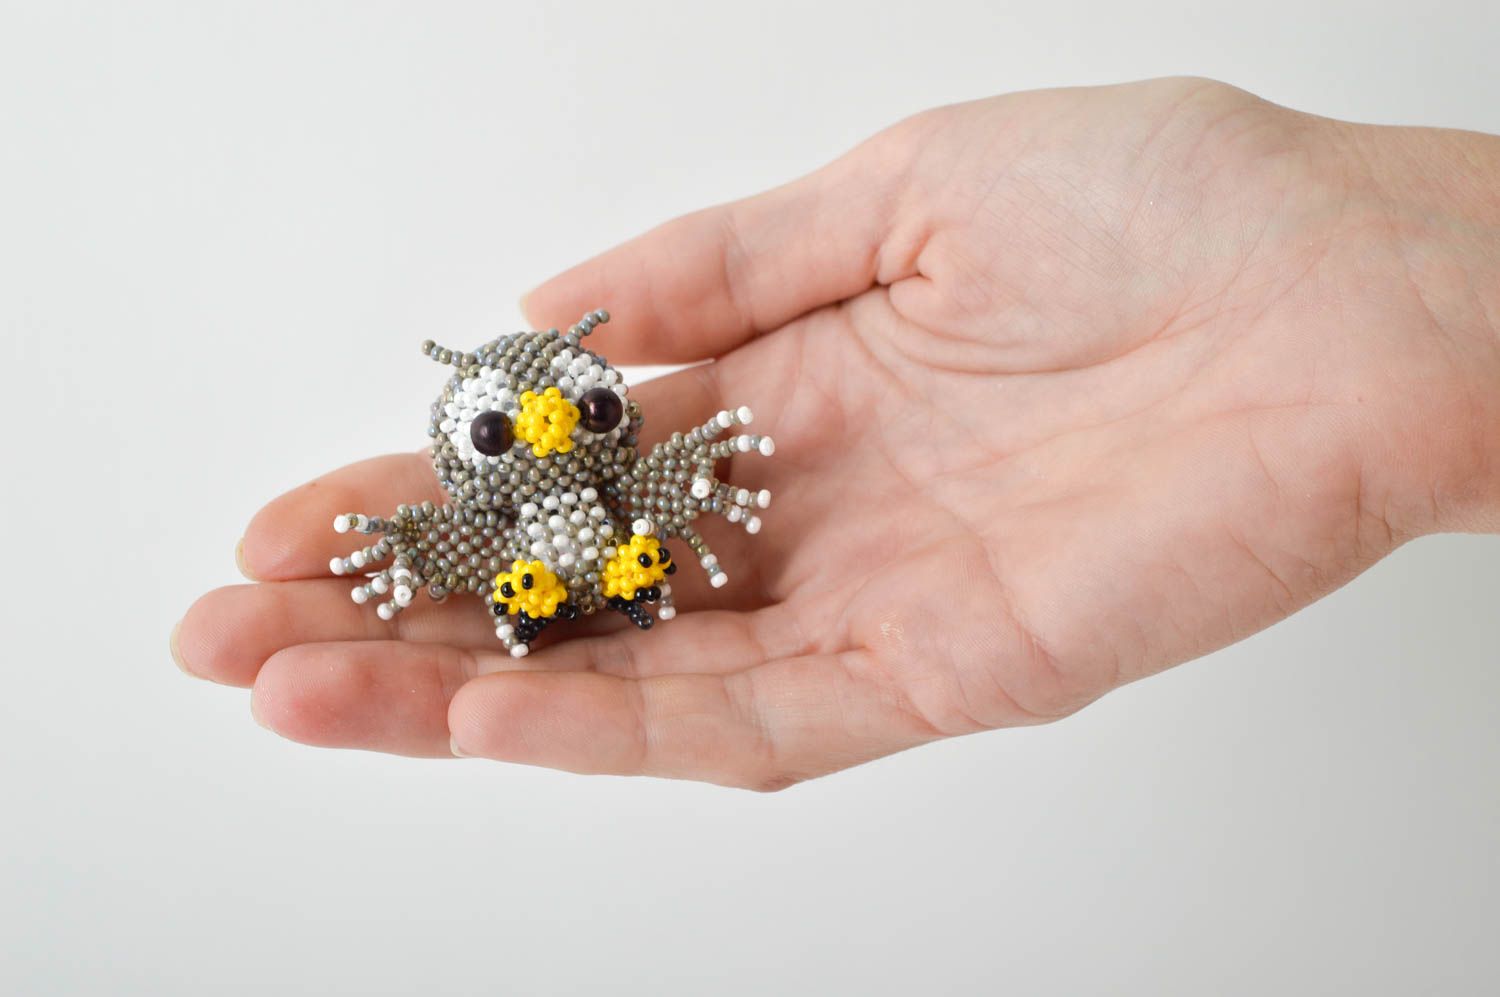 Детская игрушка ручной работы игрушка из бисера забавная игрушка в виде совы фото 2